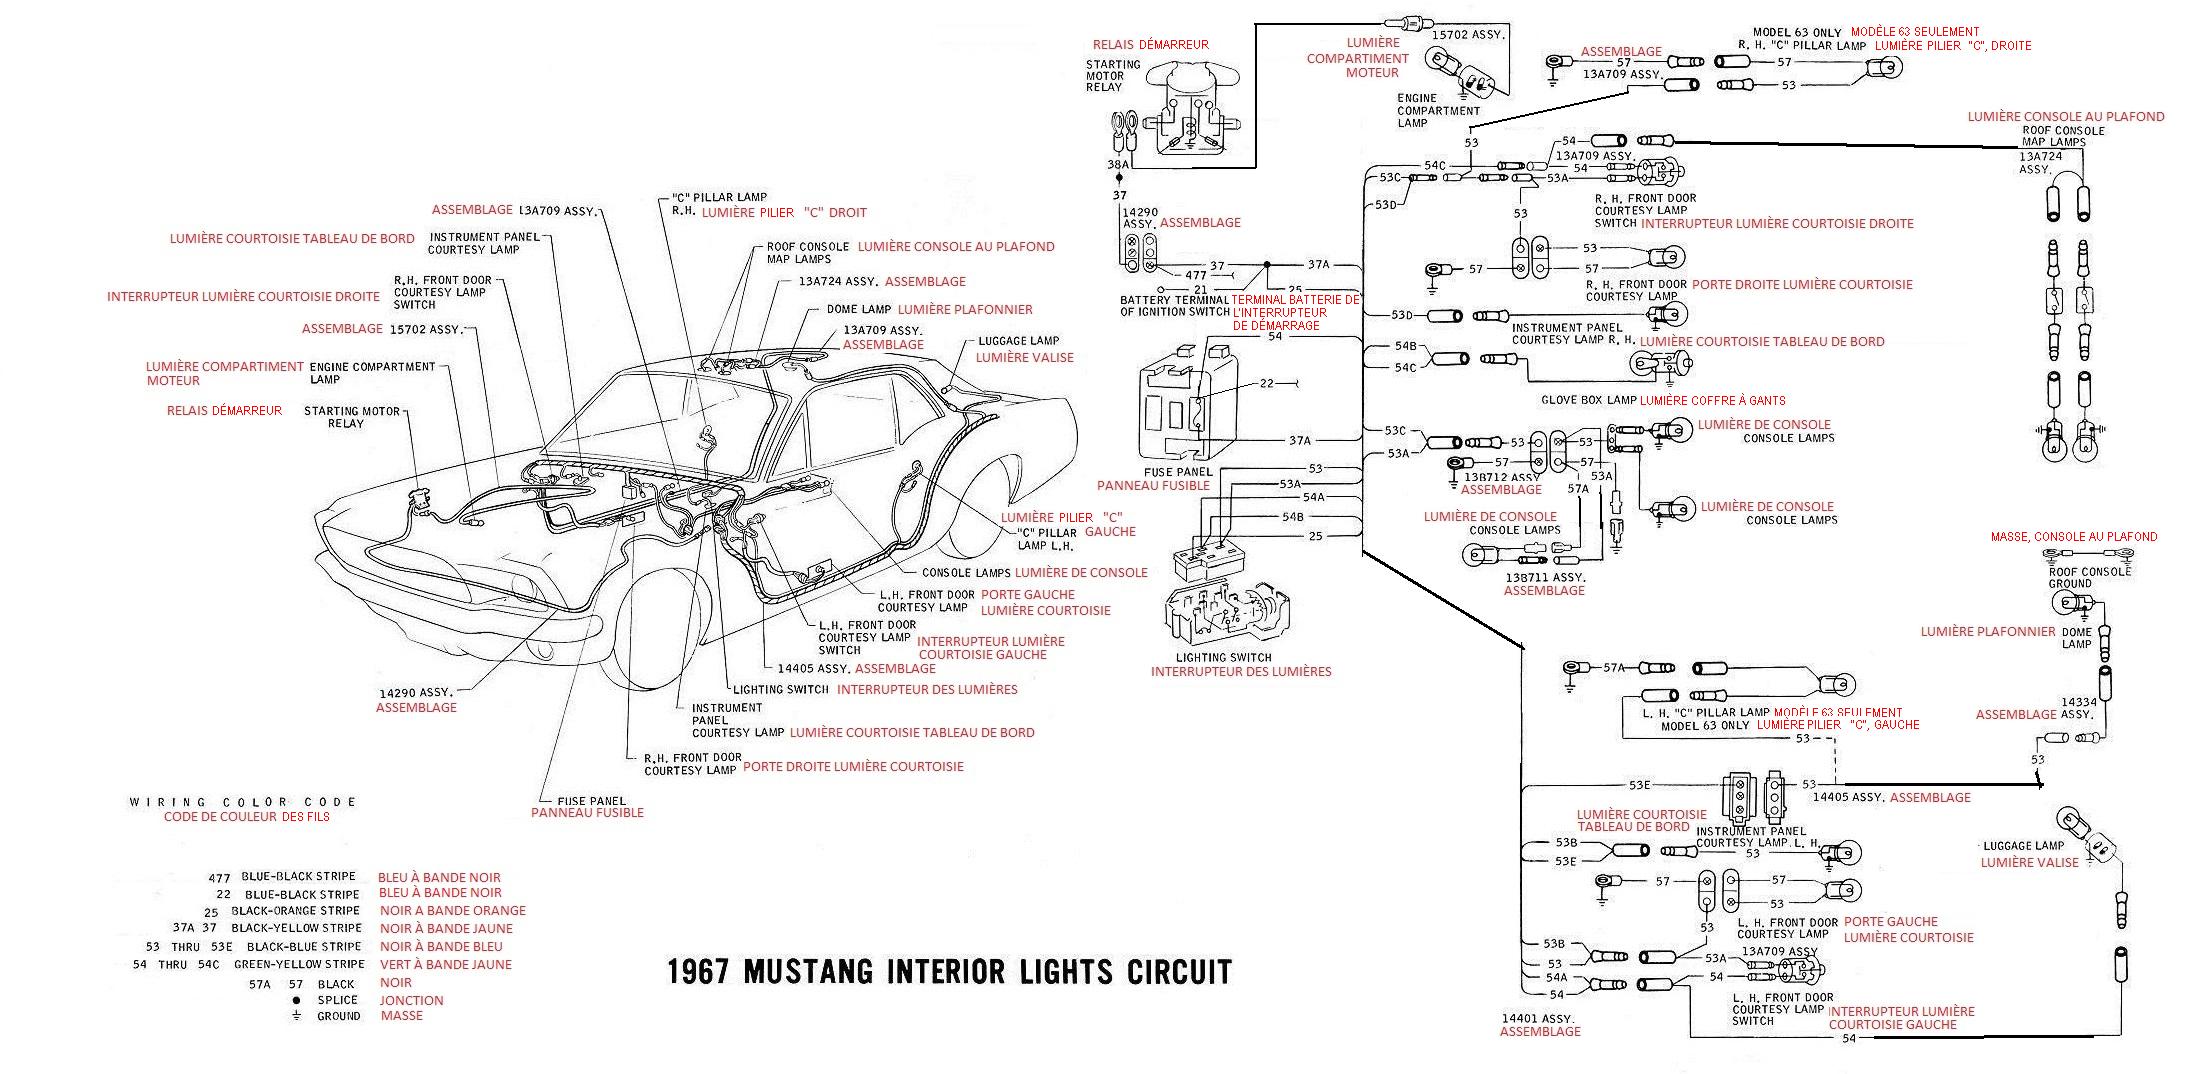 Schéma et diagramme électrique en français pour la Mustang 1967 Ok_11_10